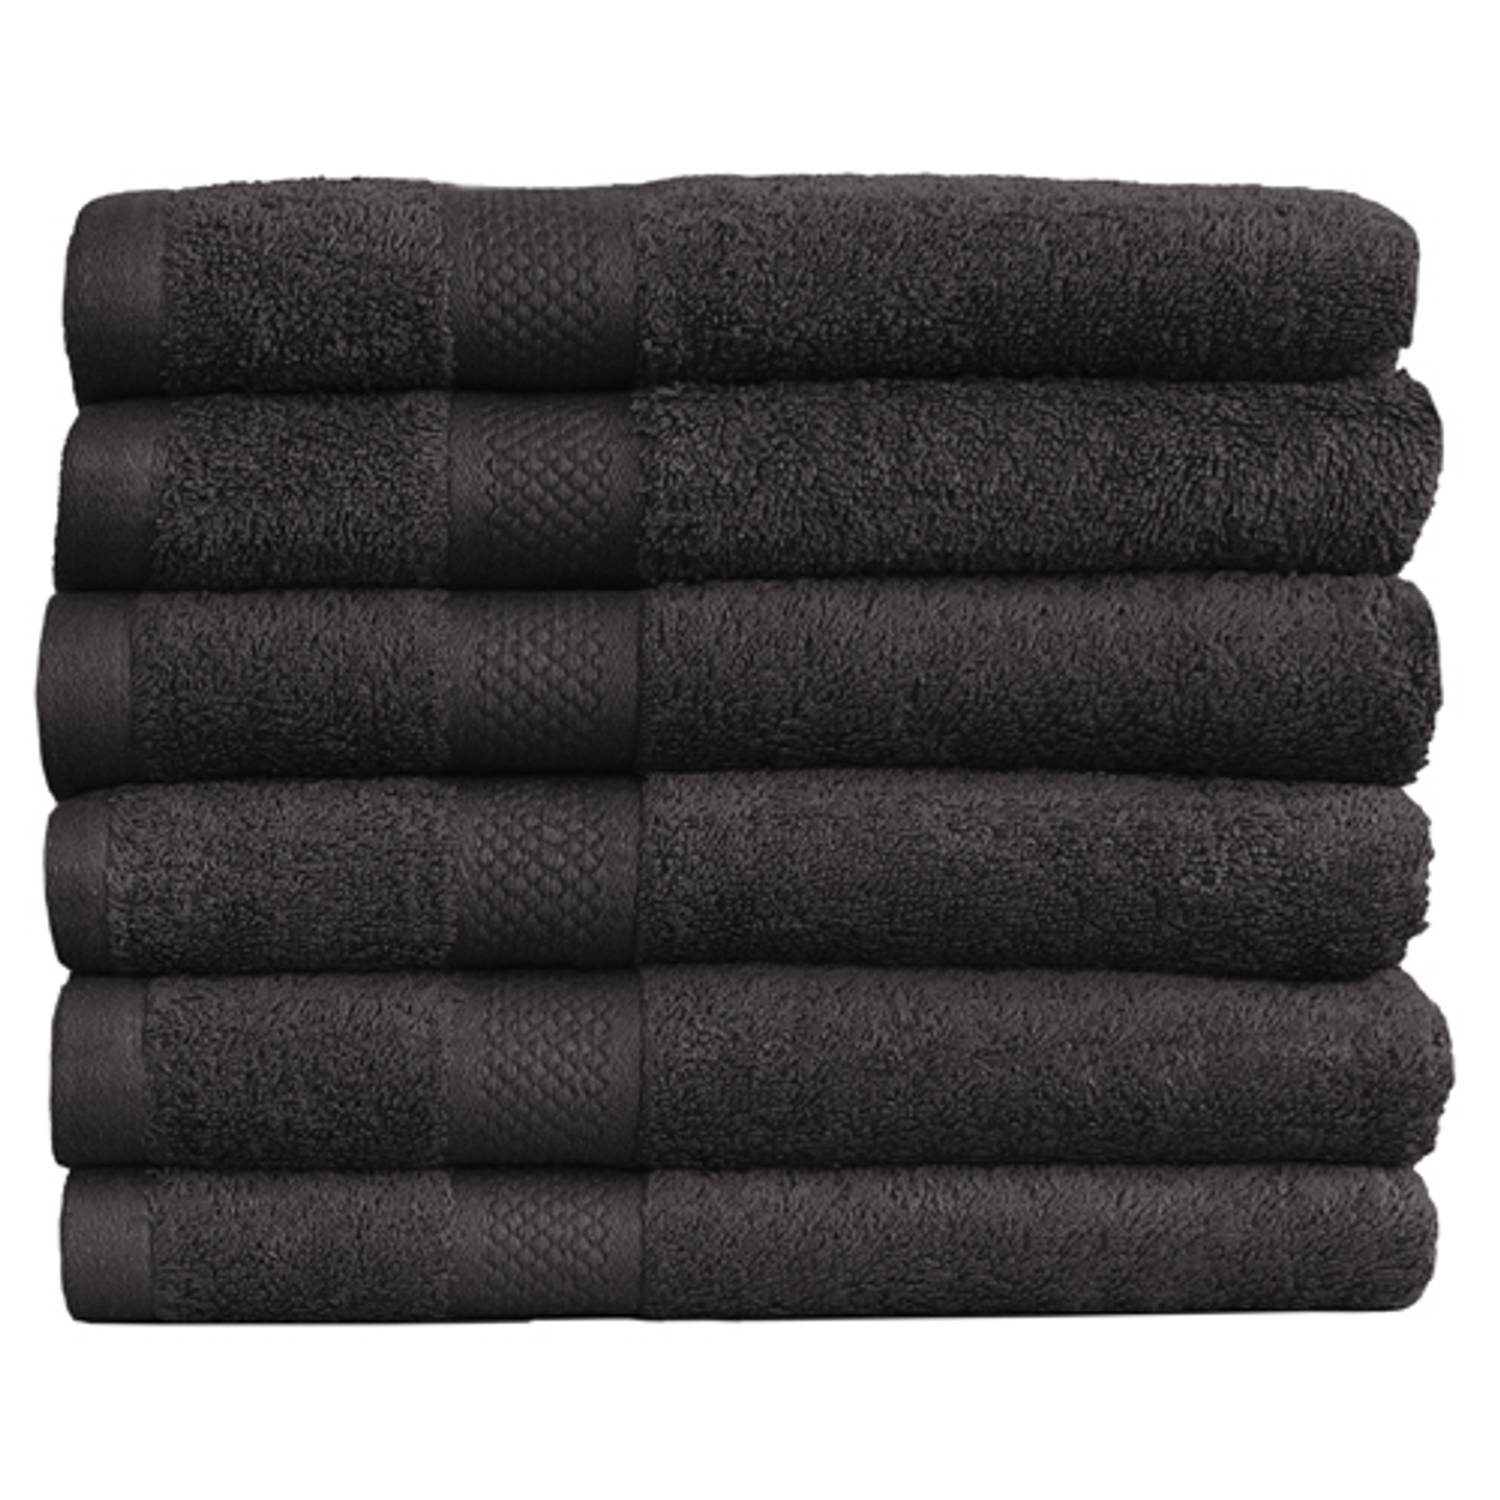 Katoenen Handdoeken Hotelkwaliteit - 6 Pack - 70 x 140 cm - Zwart